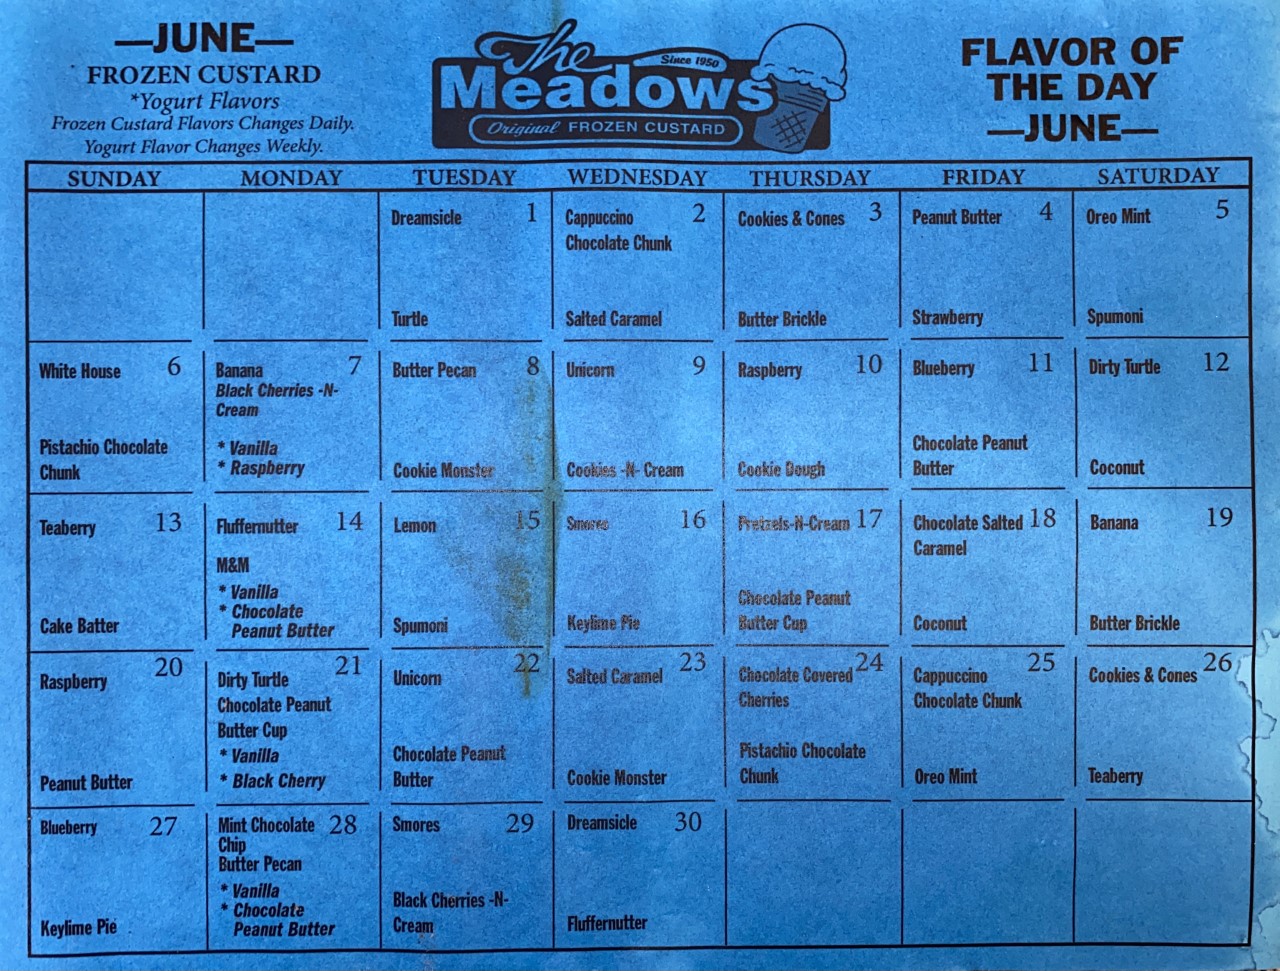 Meadows Ice Cream Flavor Of The Day Calendar